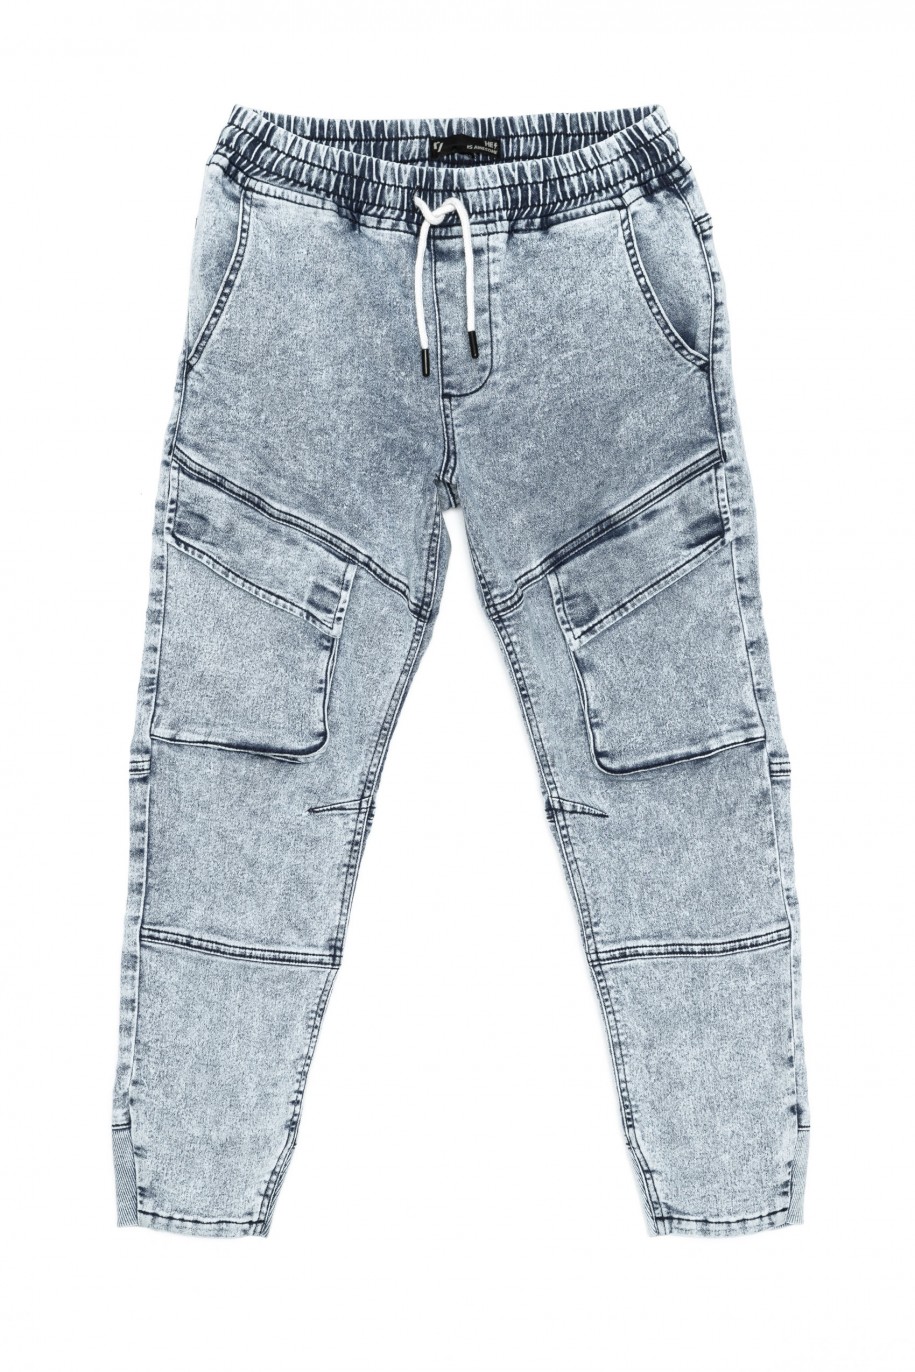 Niebieskie marmurkowe jeansy typu jogger z kieszeniami - 38372